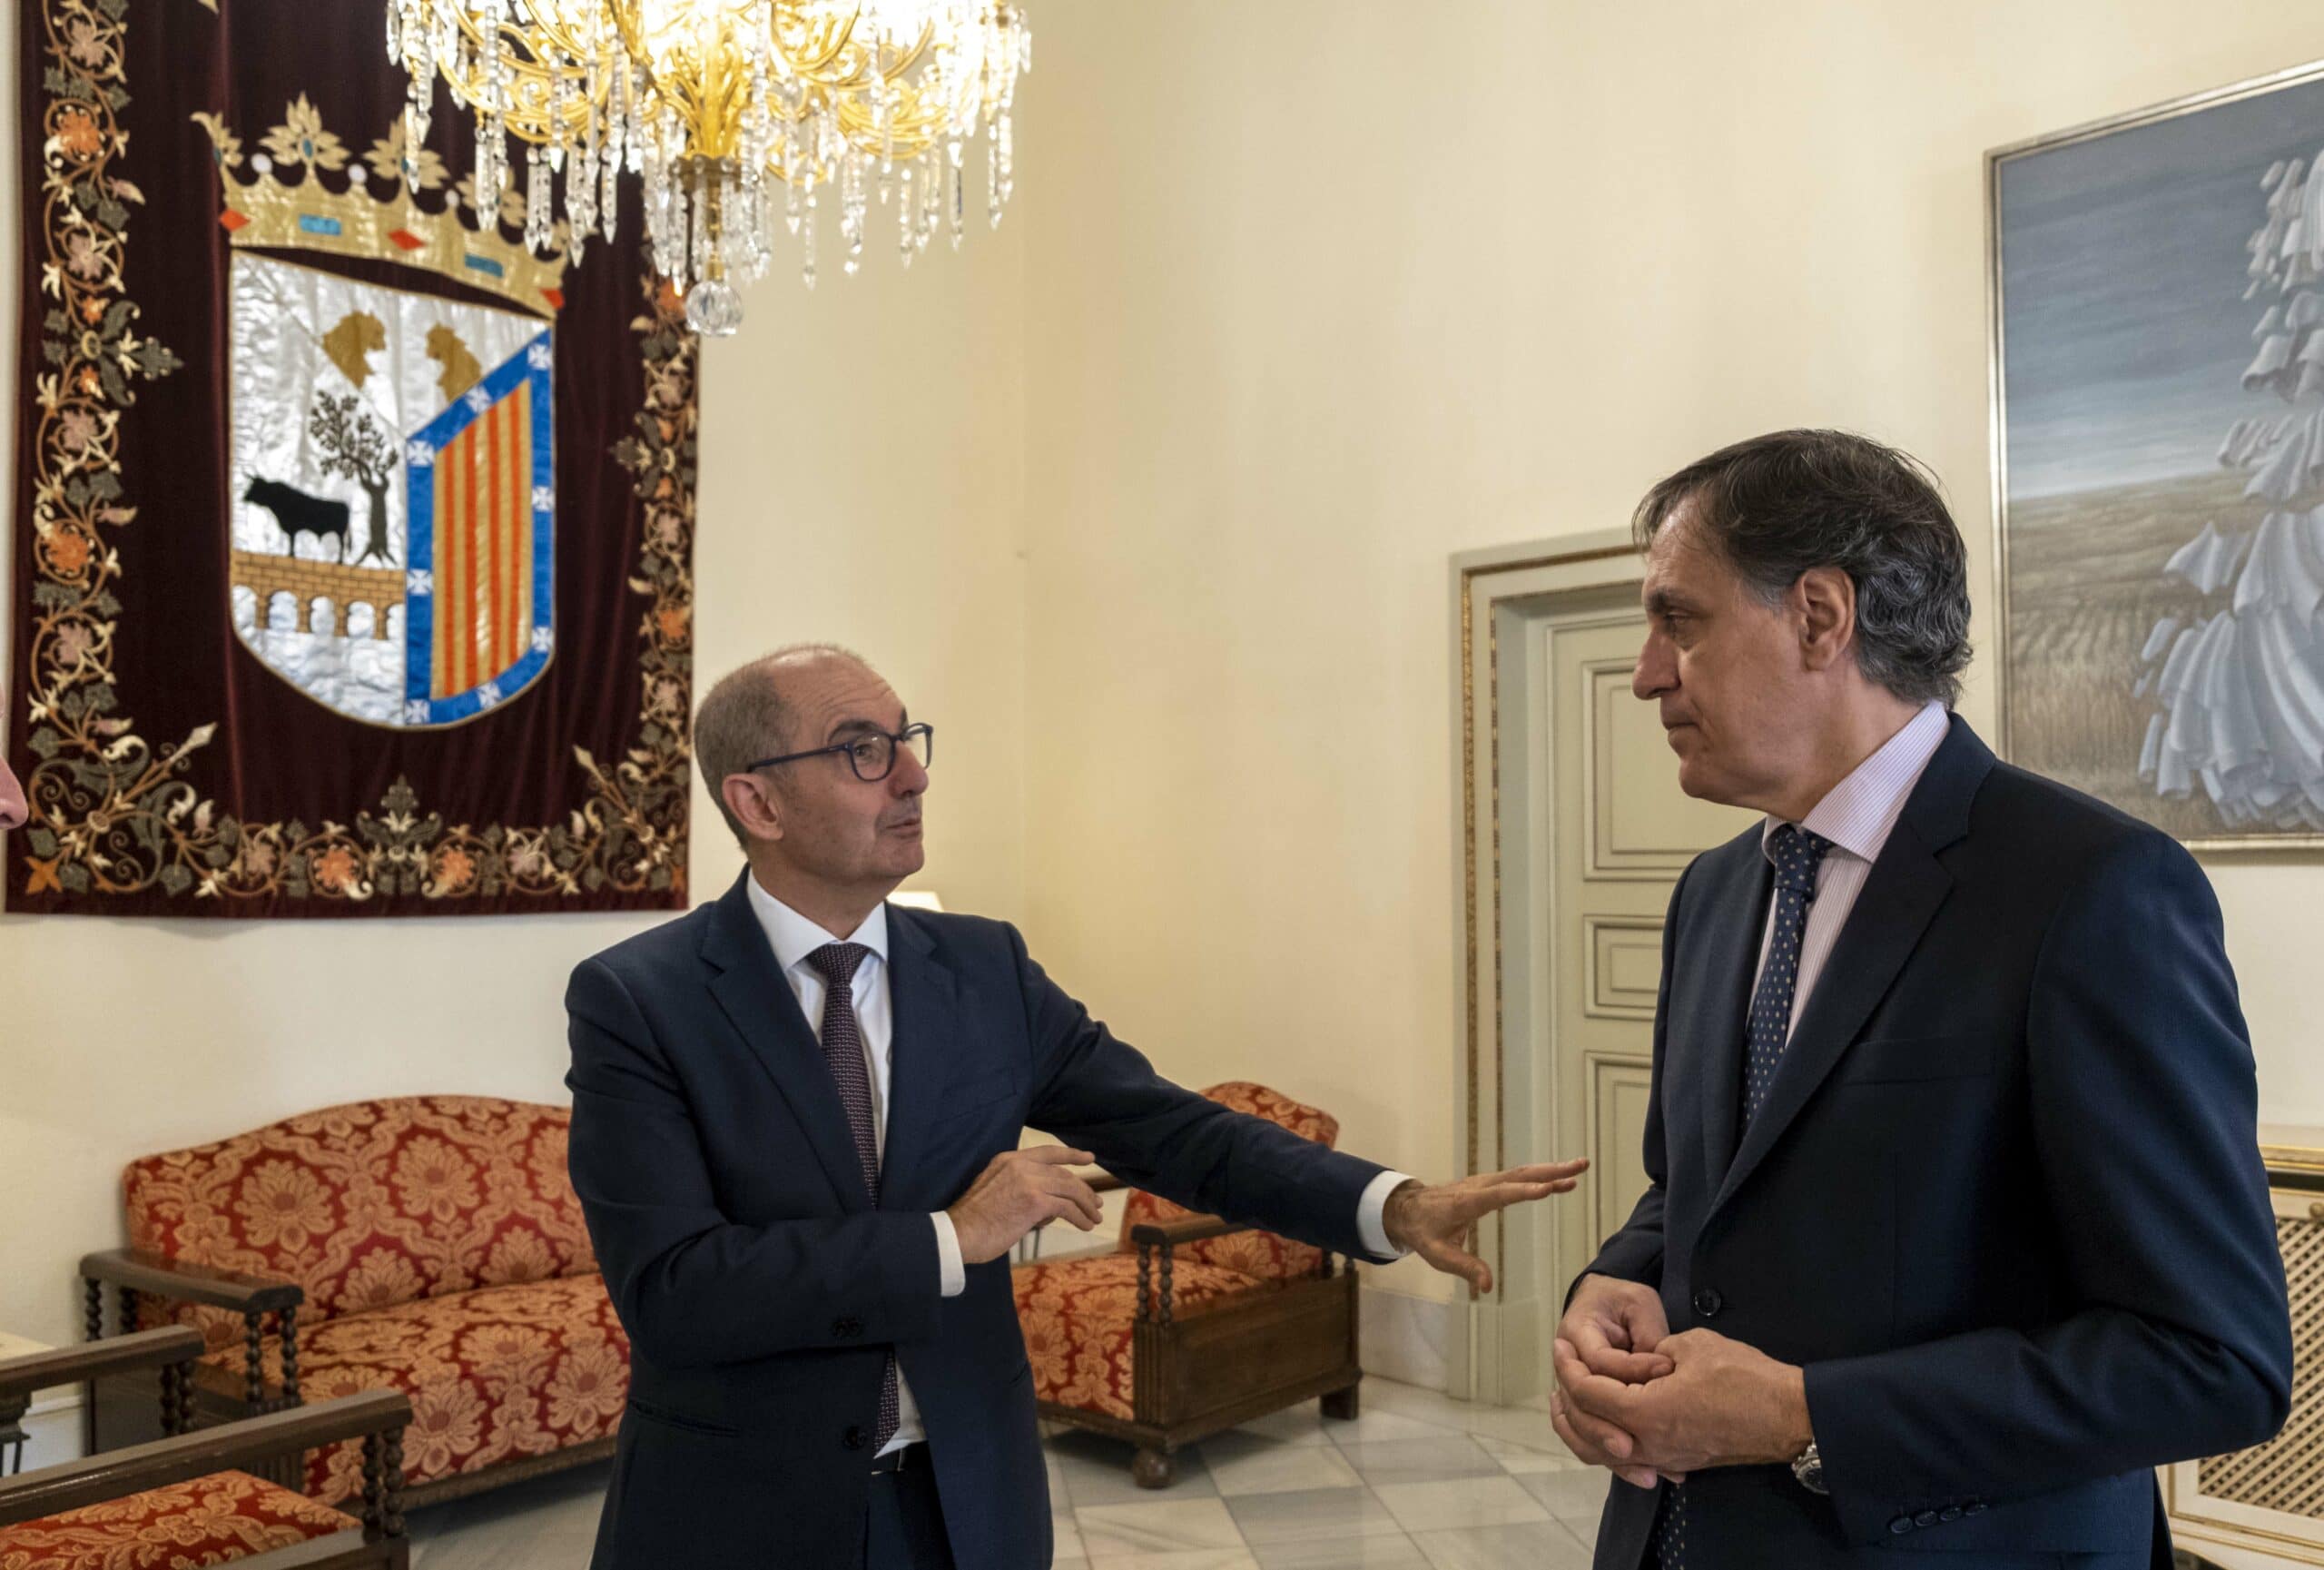 El Ayuntamiento de Salamanca sube a un máximo de 6.000 euros las ayudas financiadas por Iberaval